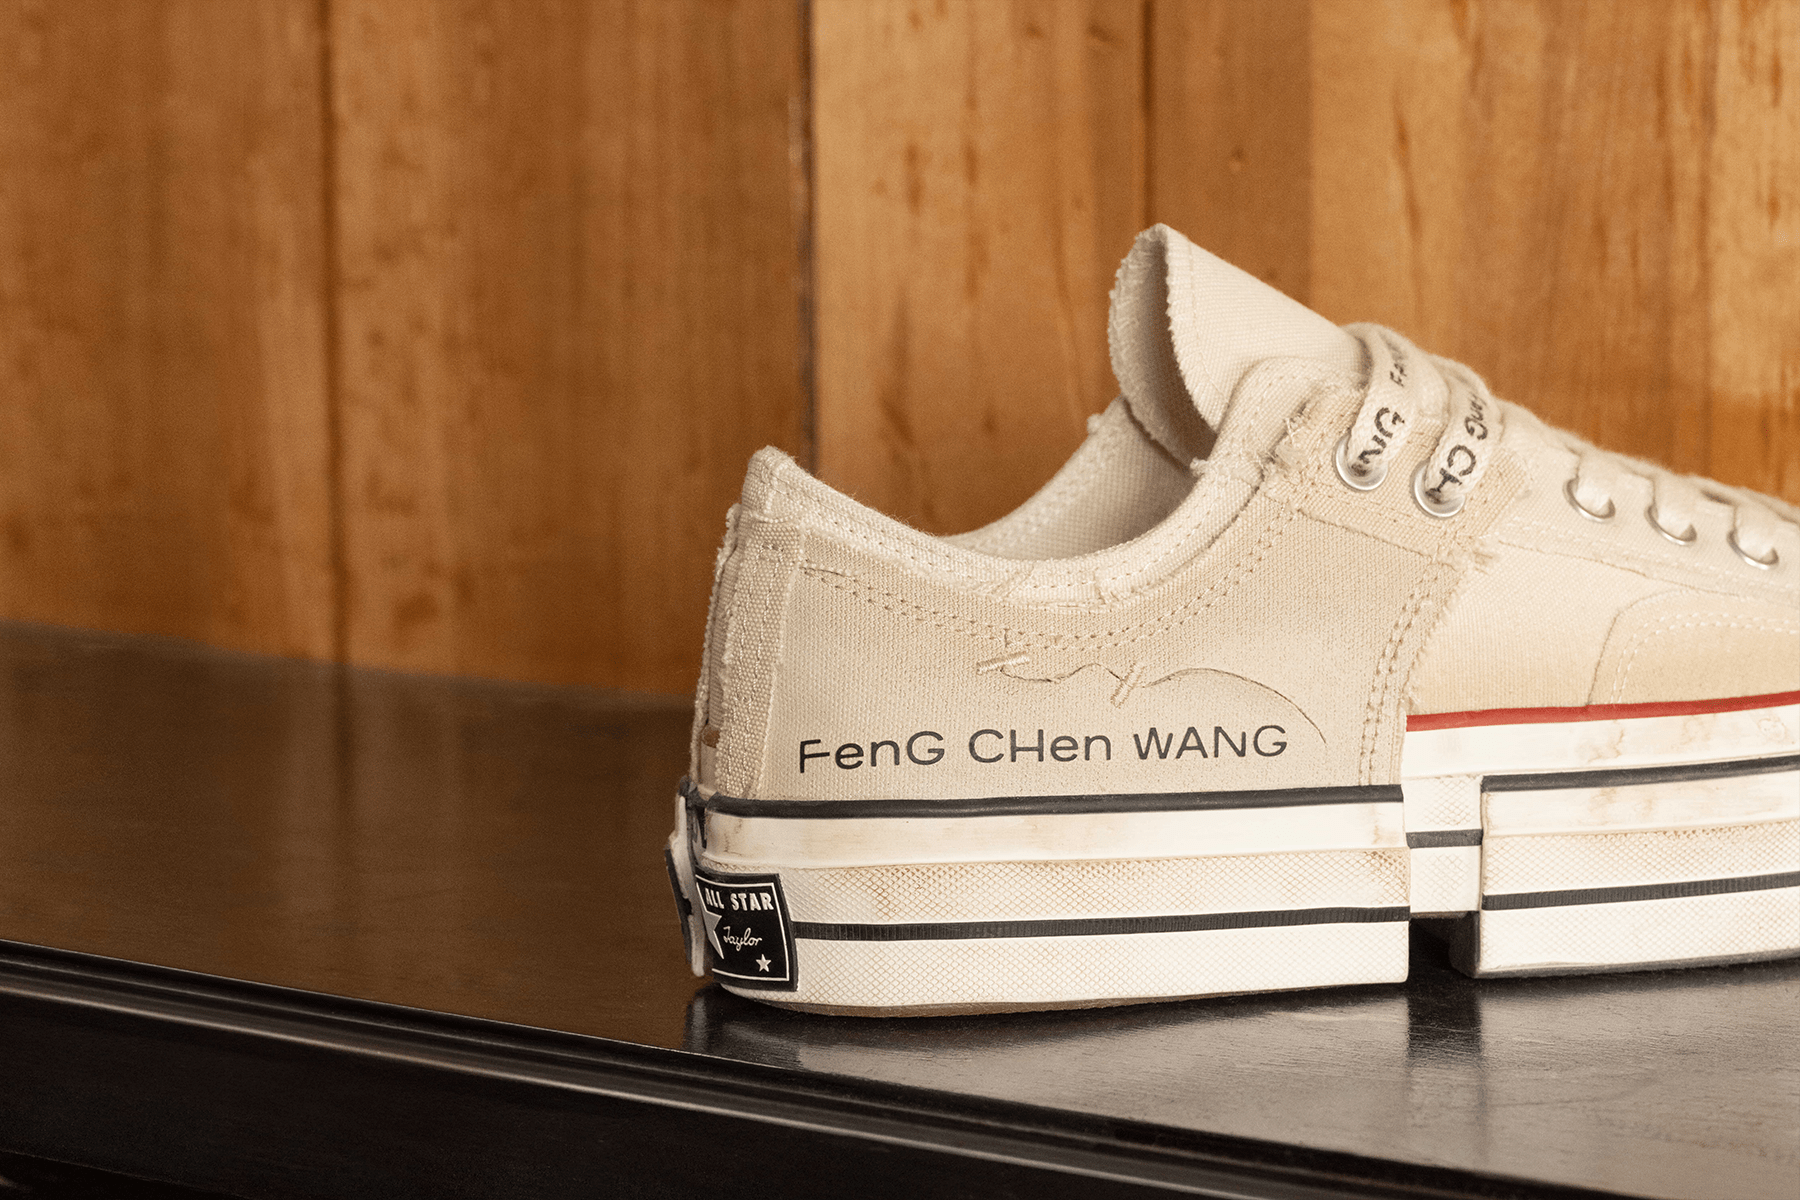 Converse x Feng Chen Wang 2-in-1 Chuck 70 最新聯名低筒鞋款正式登場